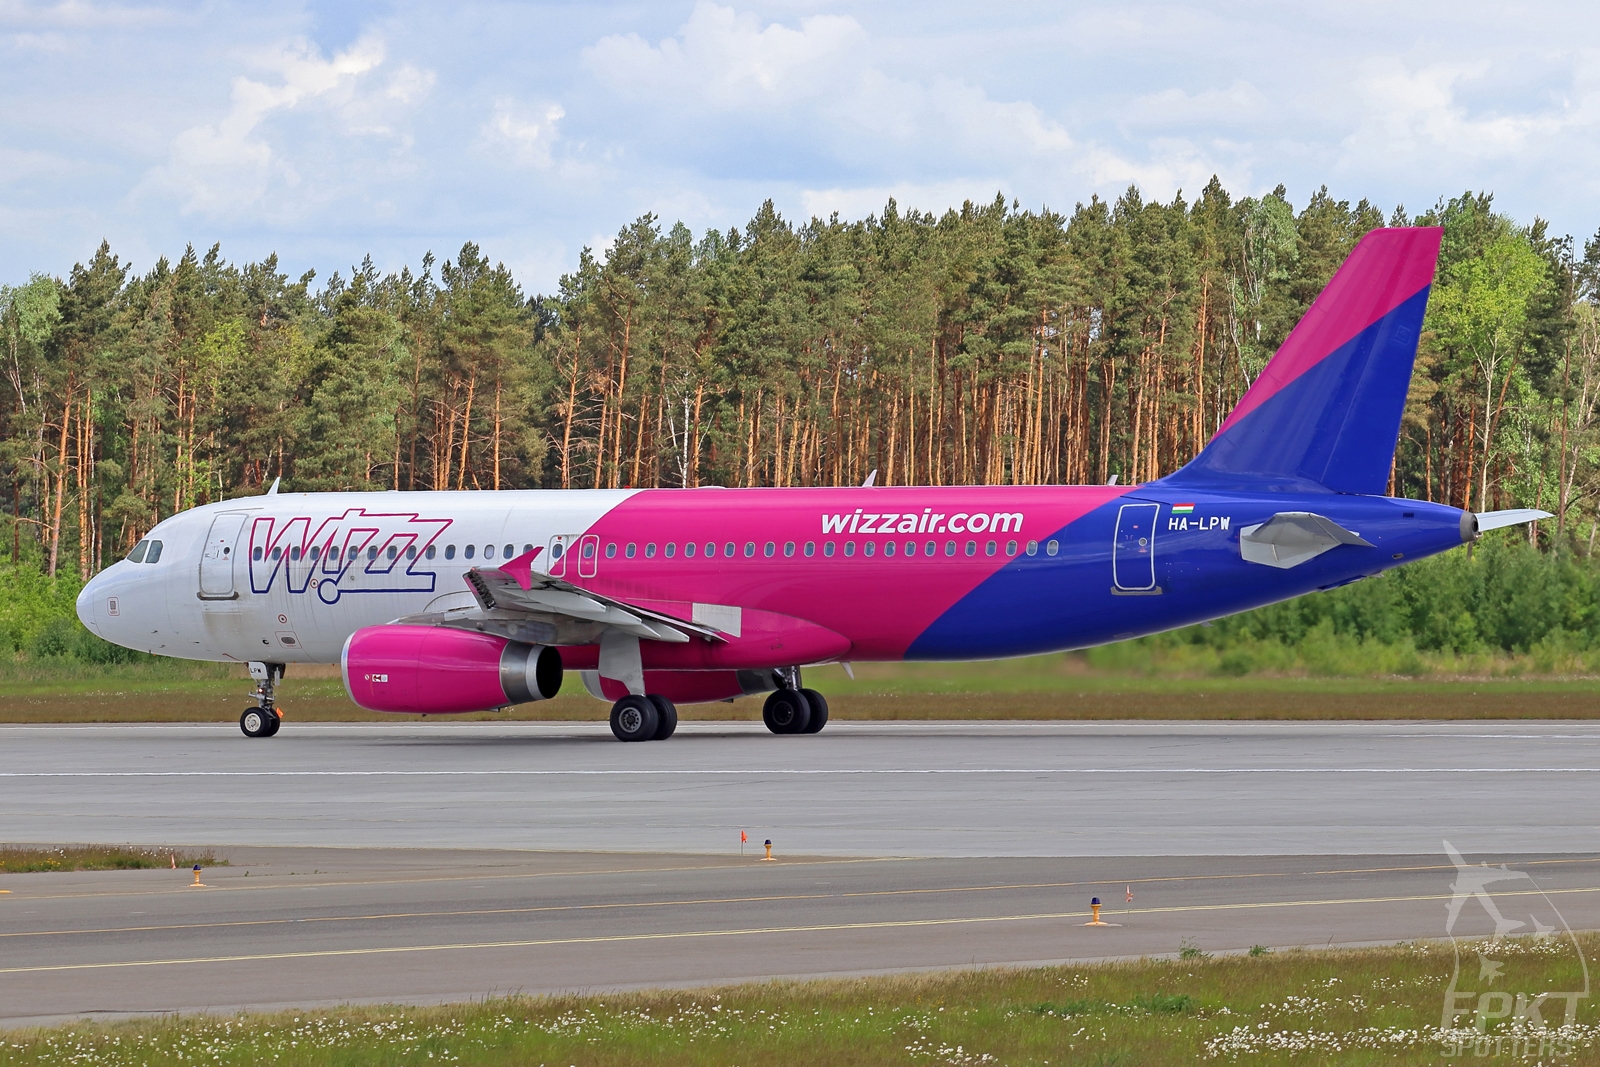 HA-LPW - Airbus A320 -232 (Wizz Air) / Pyrzowice - Katowice Poland [EPKT/KTW]